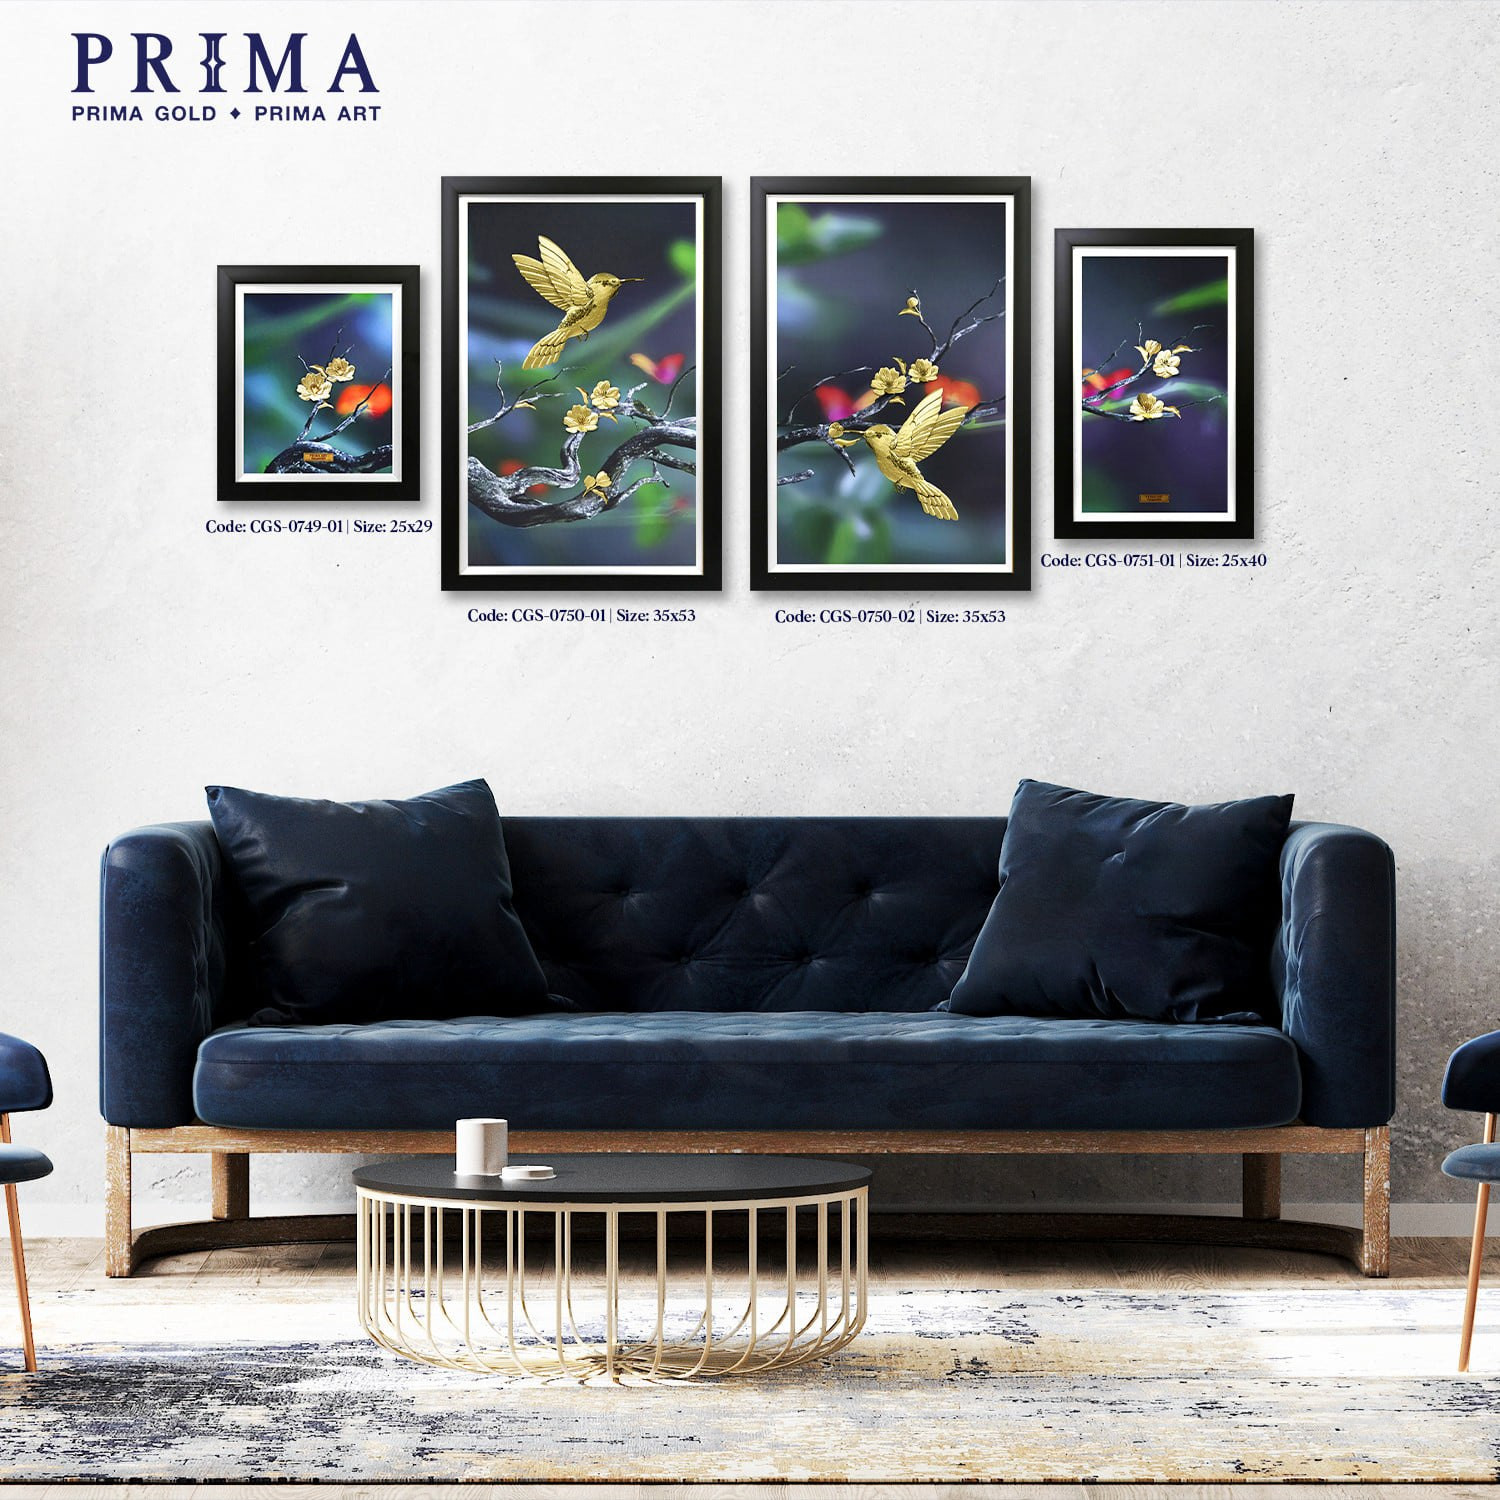 Tranh Vàng 24K PRIMA ART - Bộ Đôi Chim Và Cành Hoa Mai - Bộ 4 bức - Kích thước 35 x 53 cm - CGS-0750-02